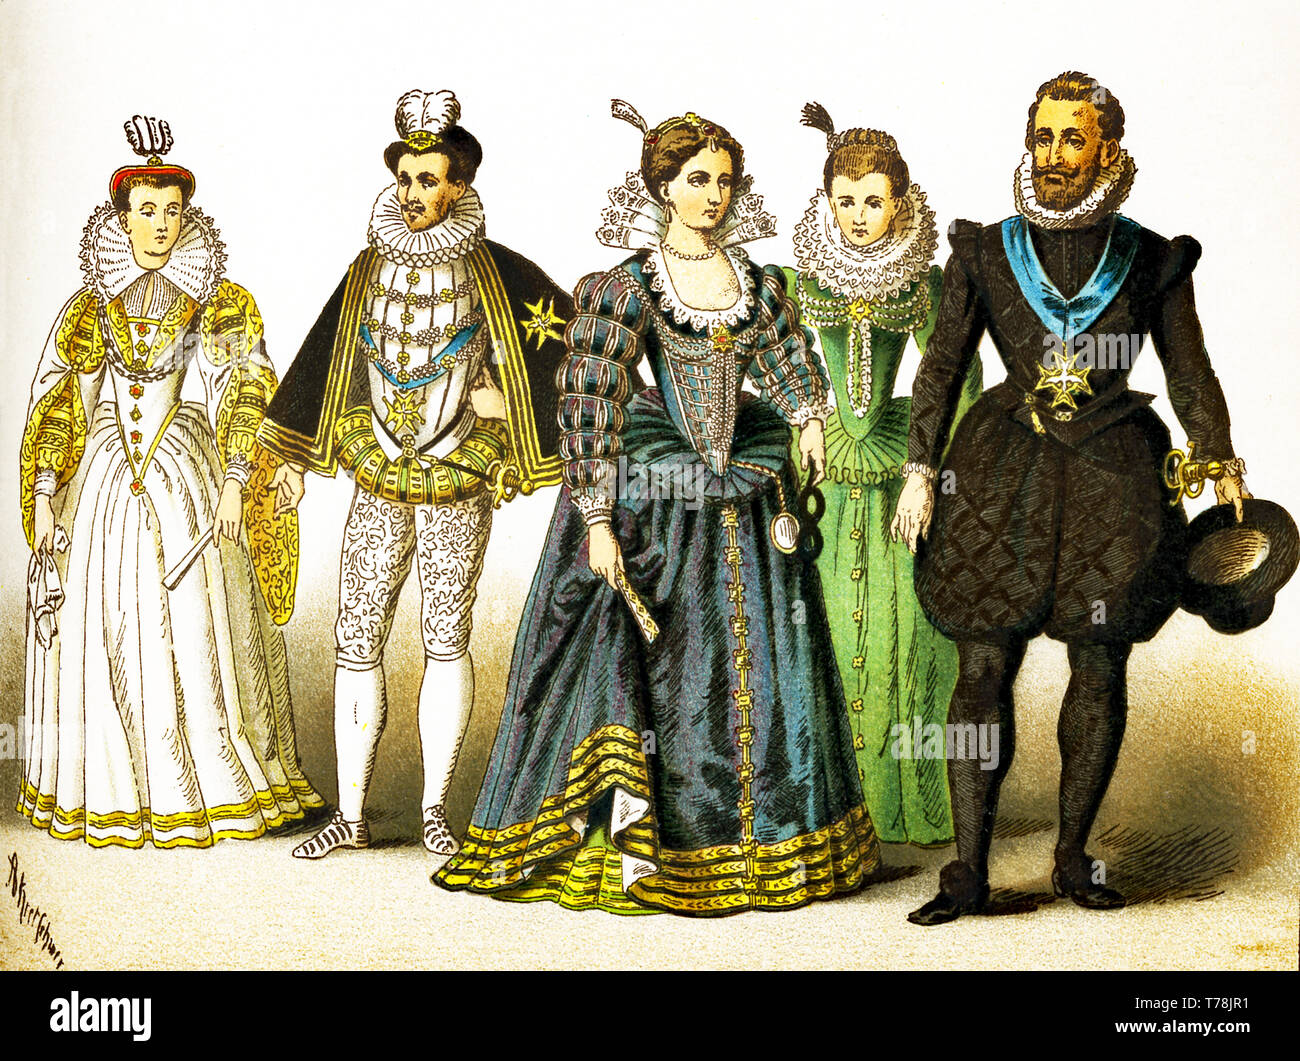 Le figure qui rappresentate sono il popolo francese tra il 1550 e il 1600. Essi sono, da sinistra a destra: Margareth di Lorena, Henry III (morto nel 1589), due corte costumi del tempo di Enrico IV alla fine del secolo Henry IV di circa 1600. L'illustrazione risale al 1882. Foto Stock